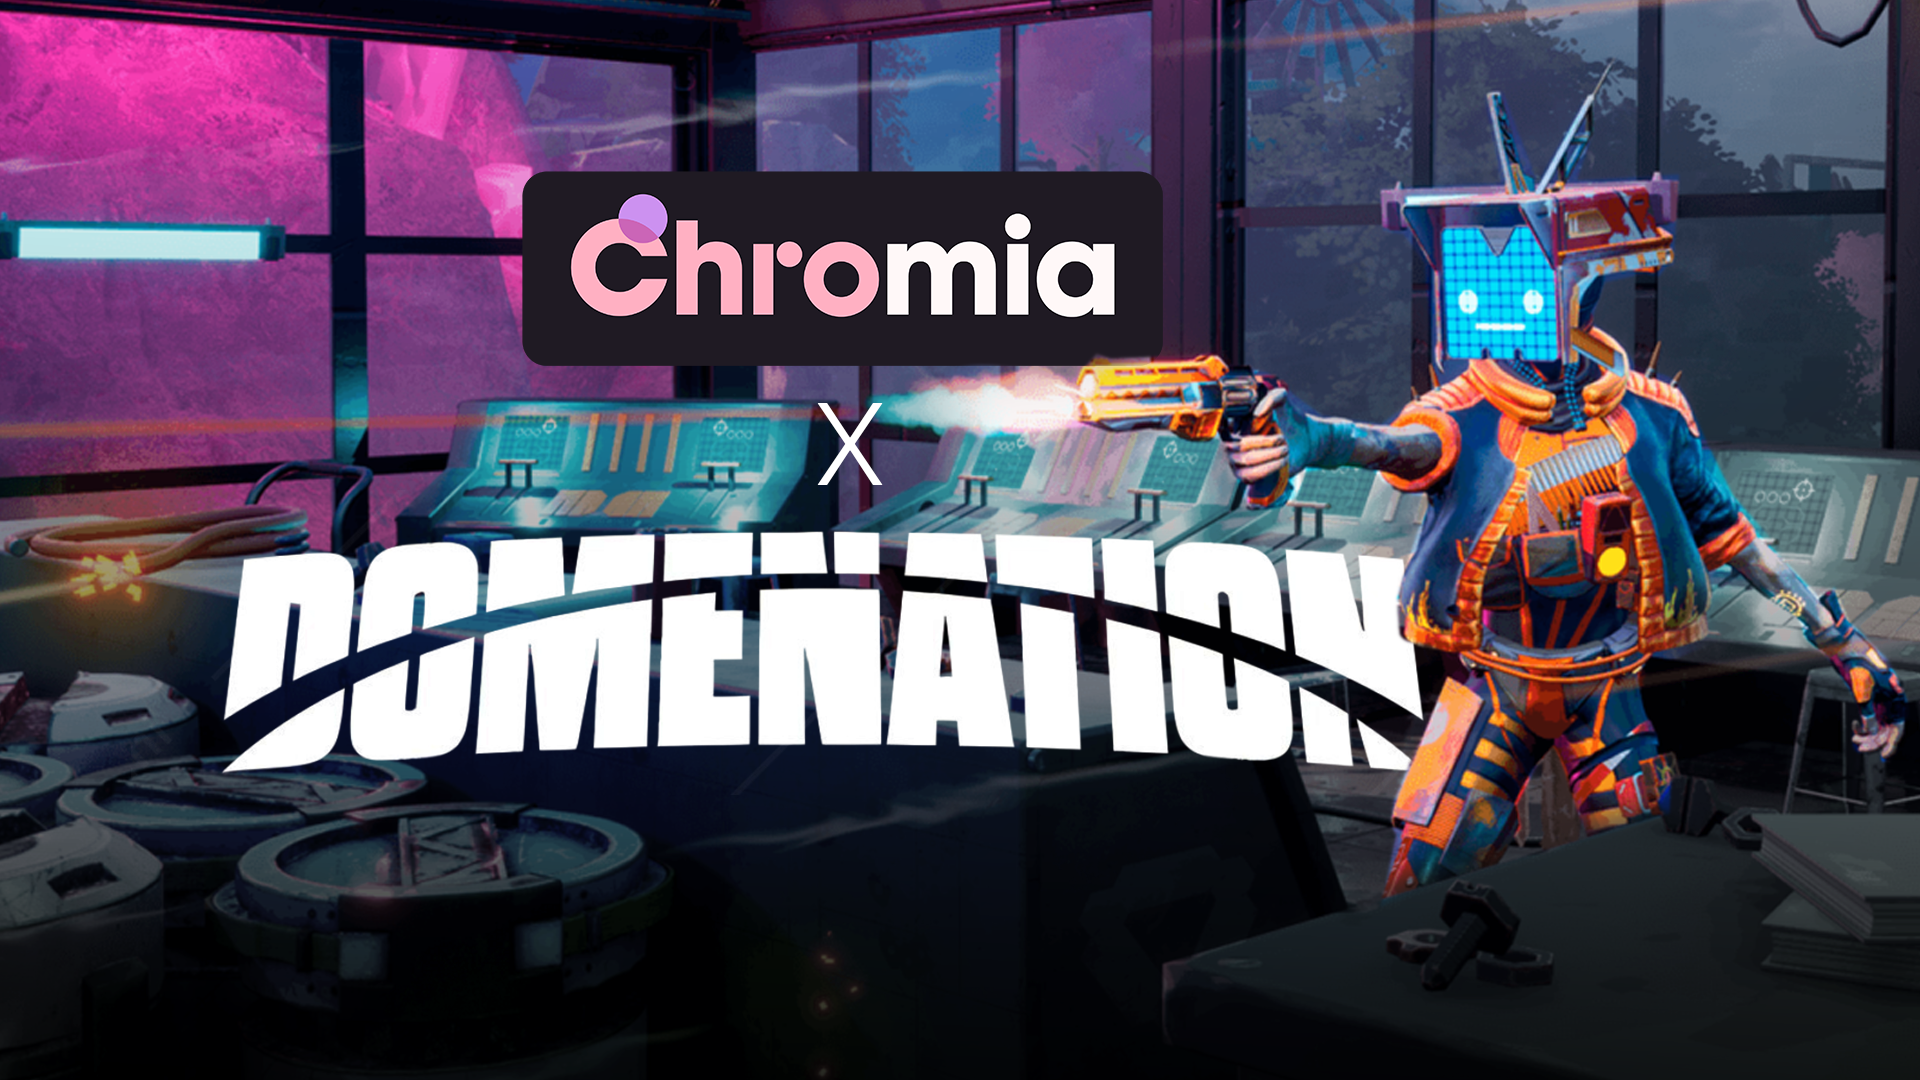 Domenation x Chromia